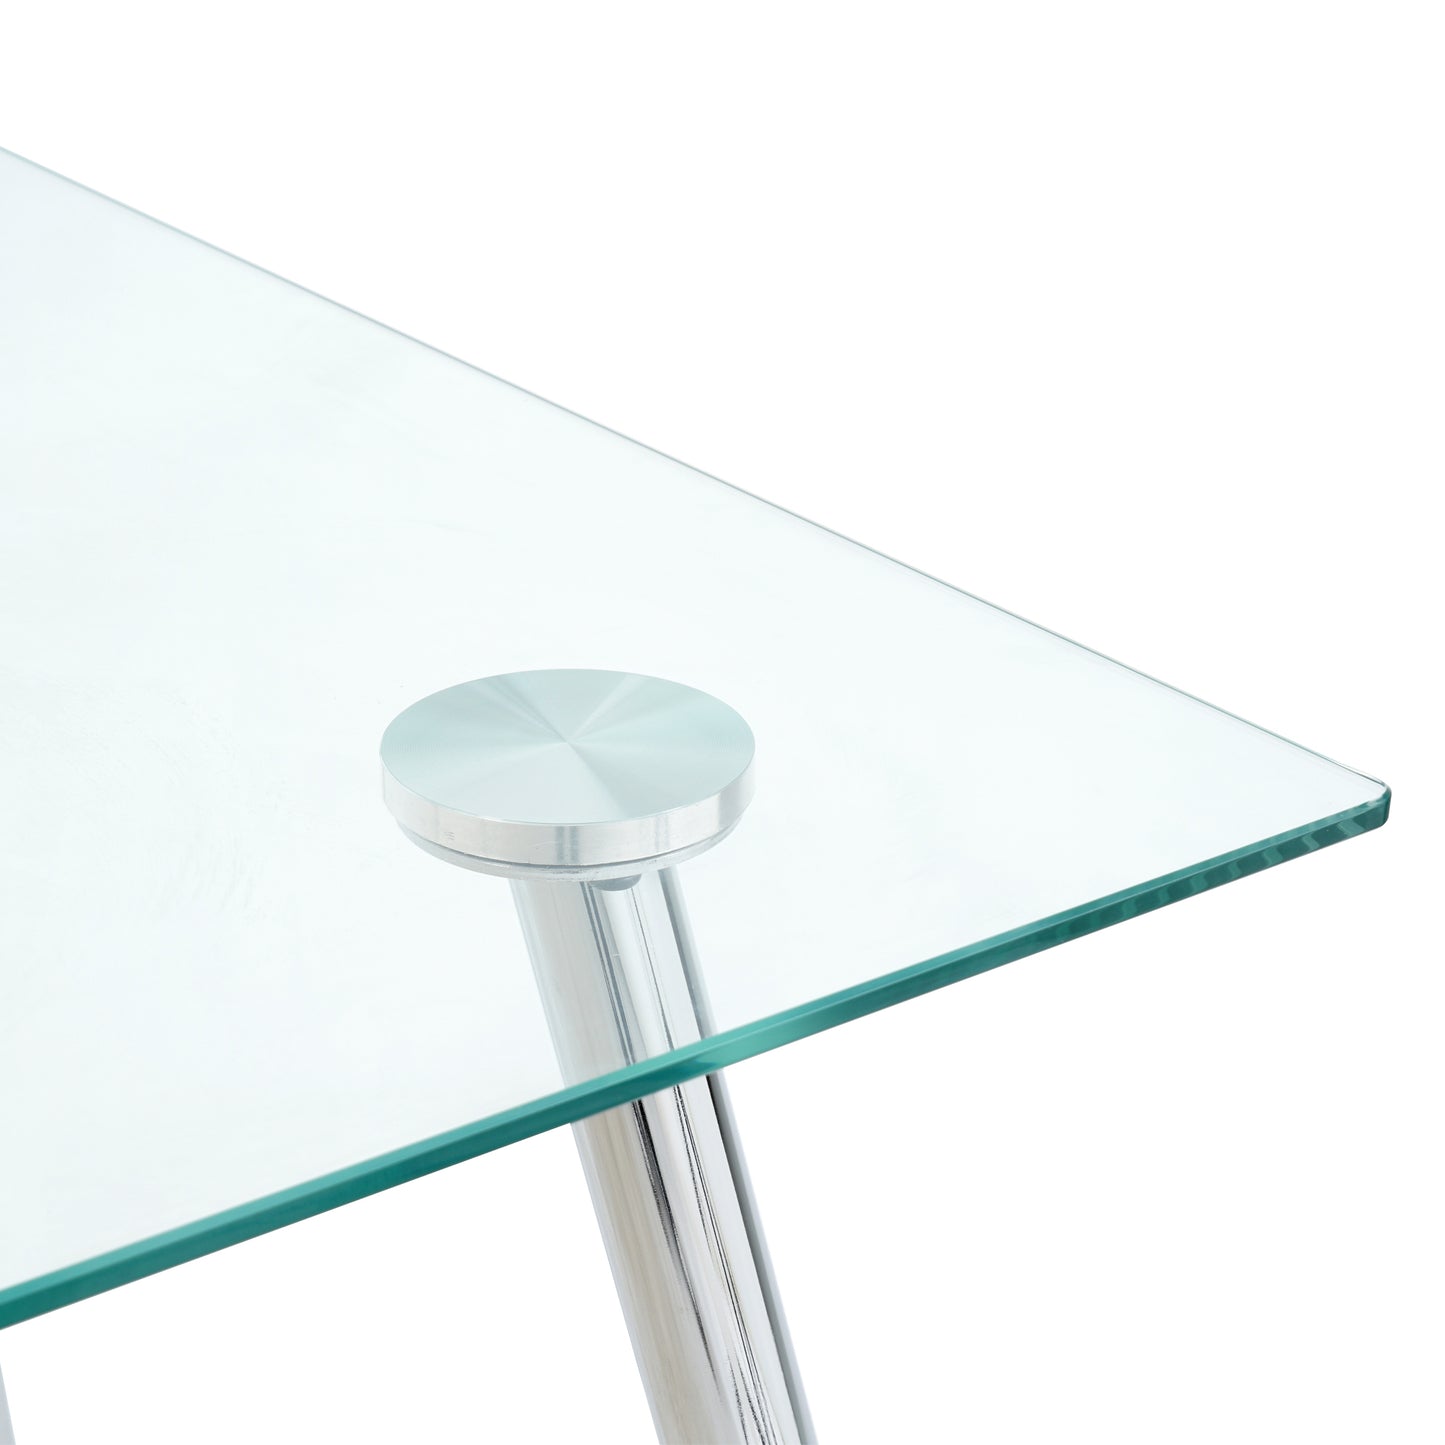 Modern Kitchen Glass dining table 51" Rectangular  Tempered Glass Table top,Clear Dining Table Metal Legs, Chrome legs(set of 1)